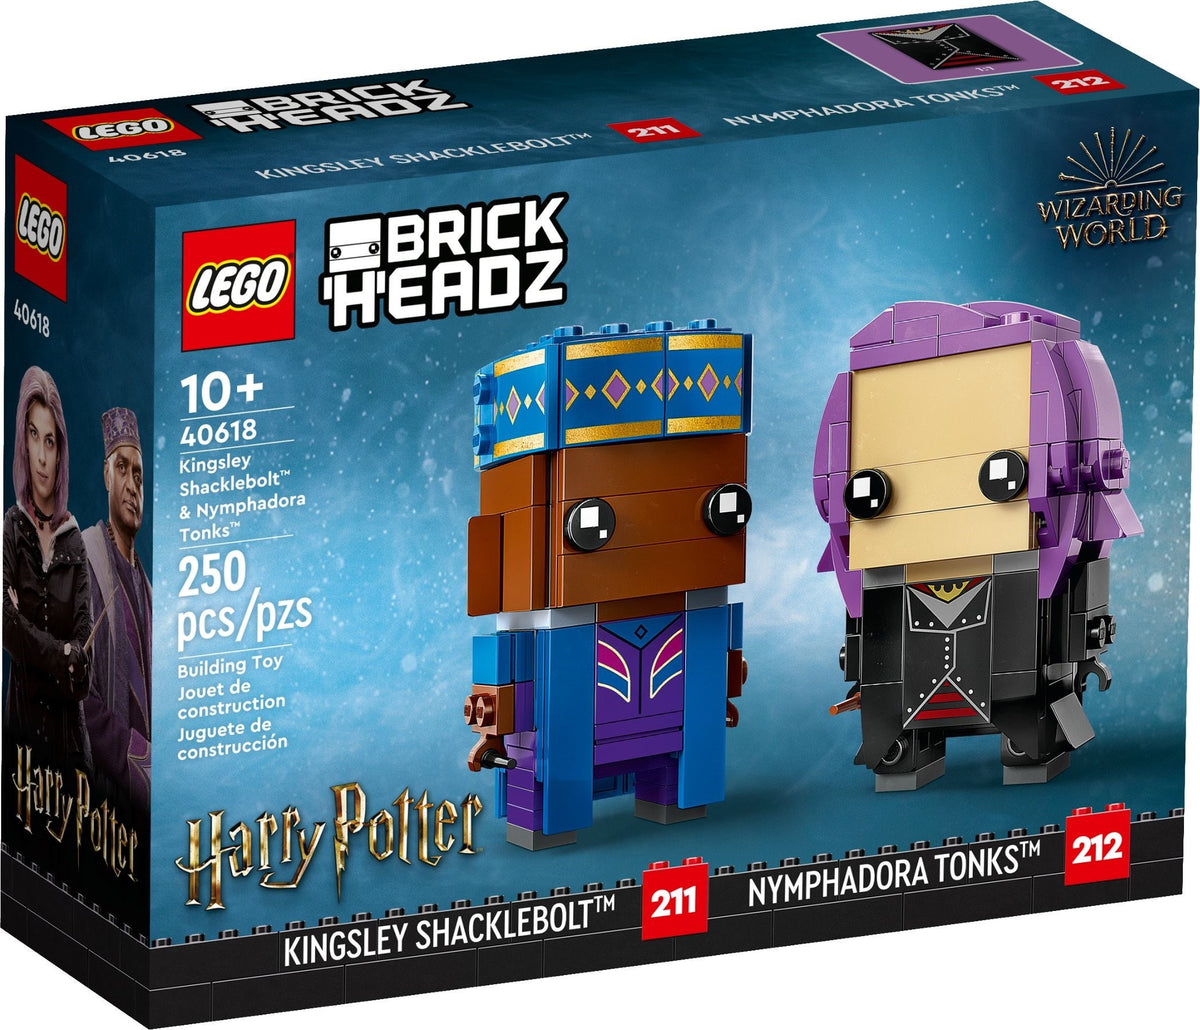 LEGO BrickHeadz 40618 Kingsley Shacklebolt &amp; Nymphadora Tonks